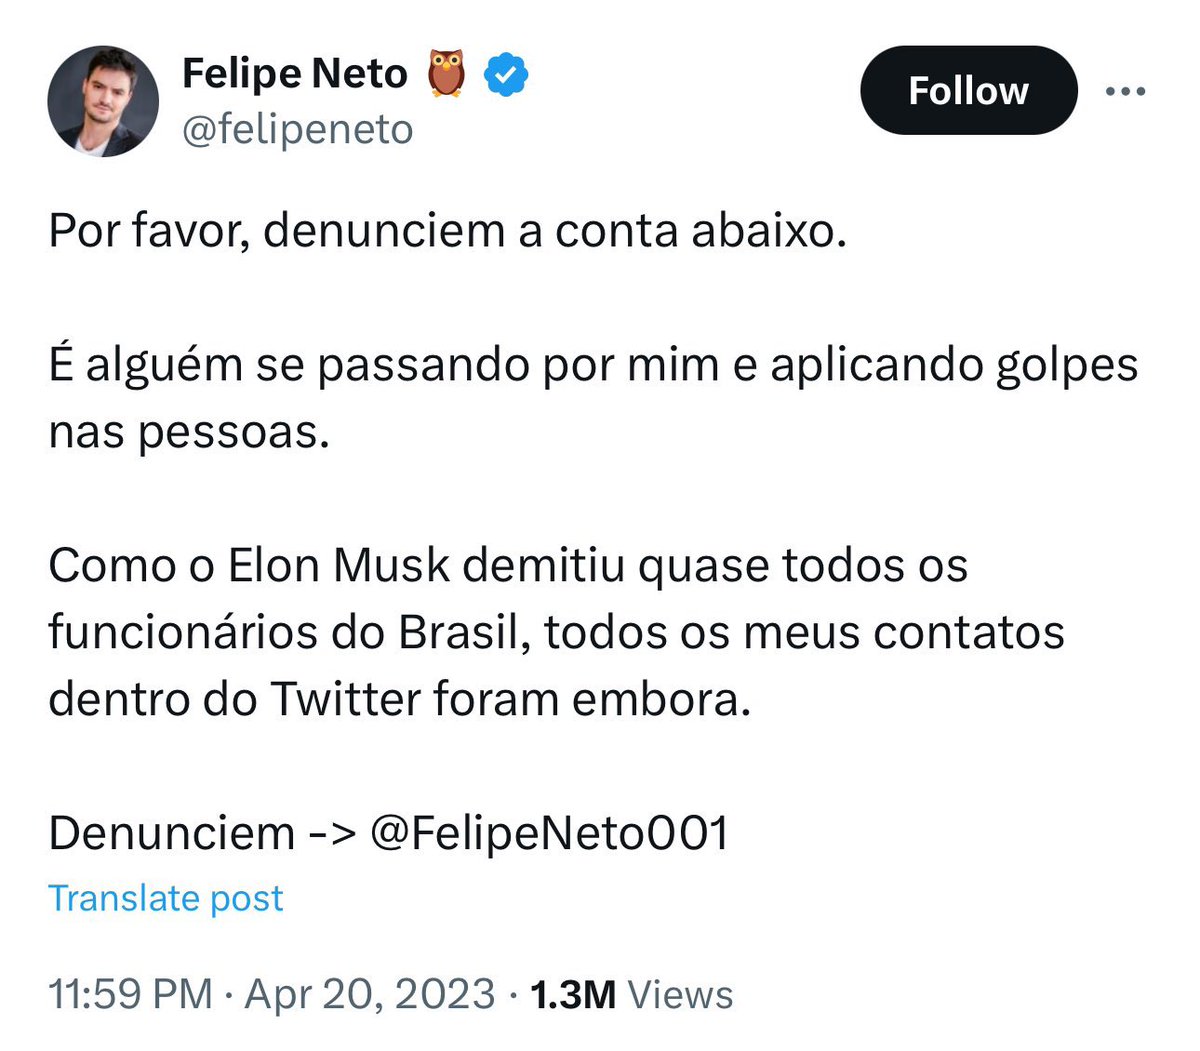 O próprio Felipe Neto disse que tinha 'contatos dentro do Twitter' Vai negar agora?